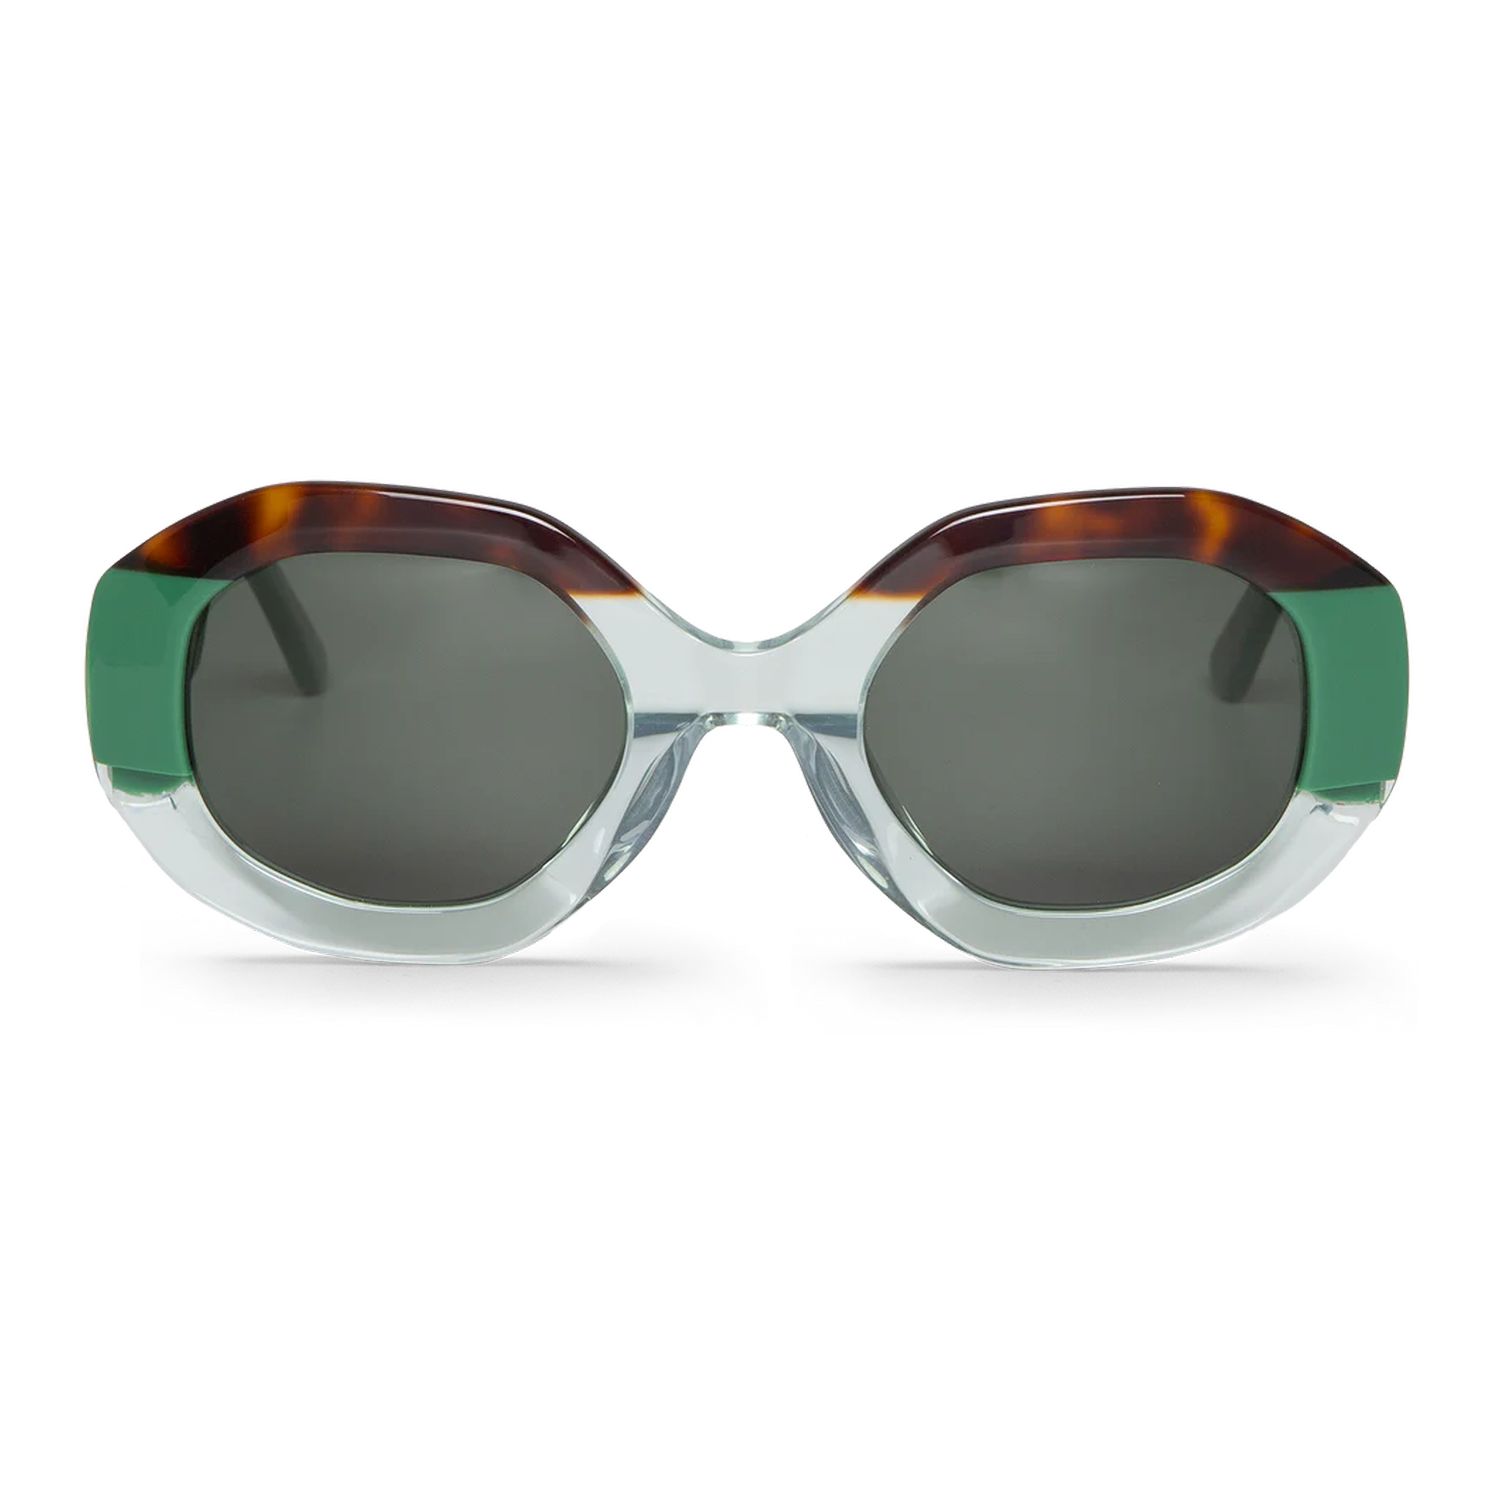 Gafas de sol Mr Boho BAK1-11 modelo Vasasta con lentes clásicas - Óptica Doñana Visión